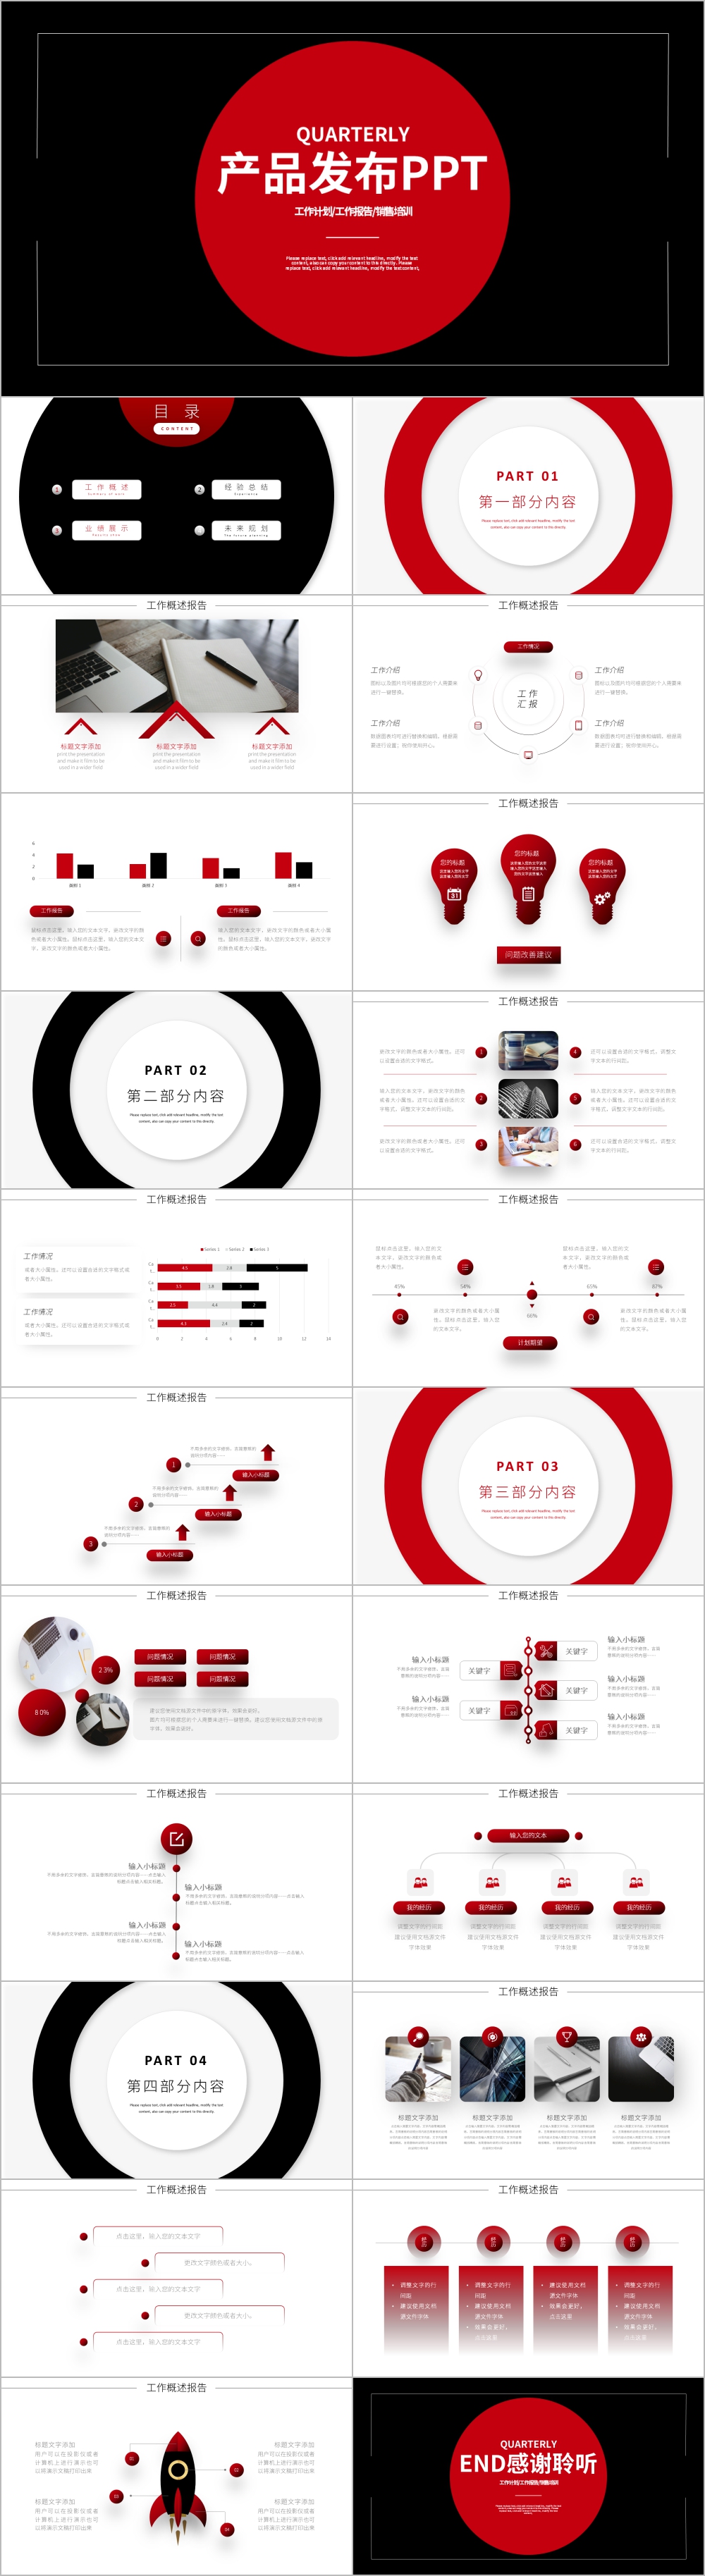 红黑创意圆形产品发布PPT模板